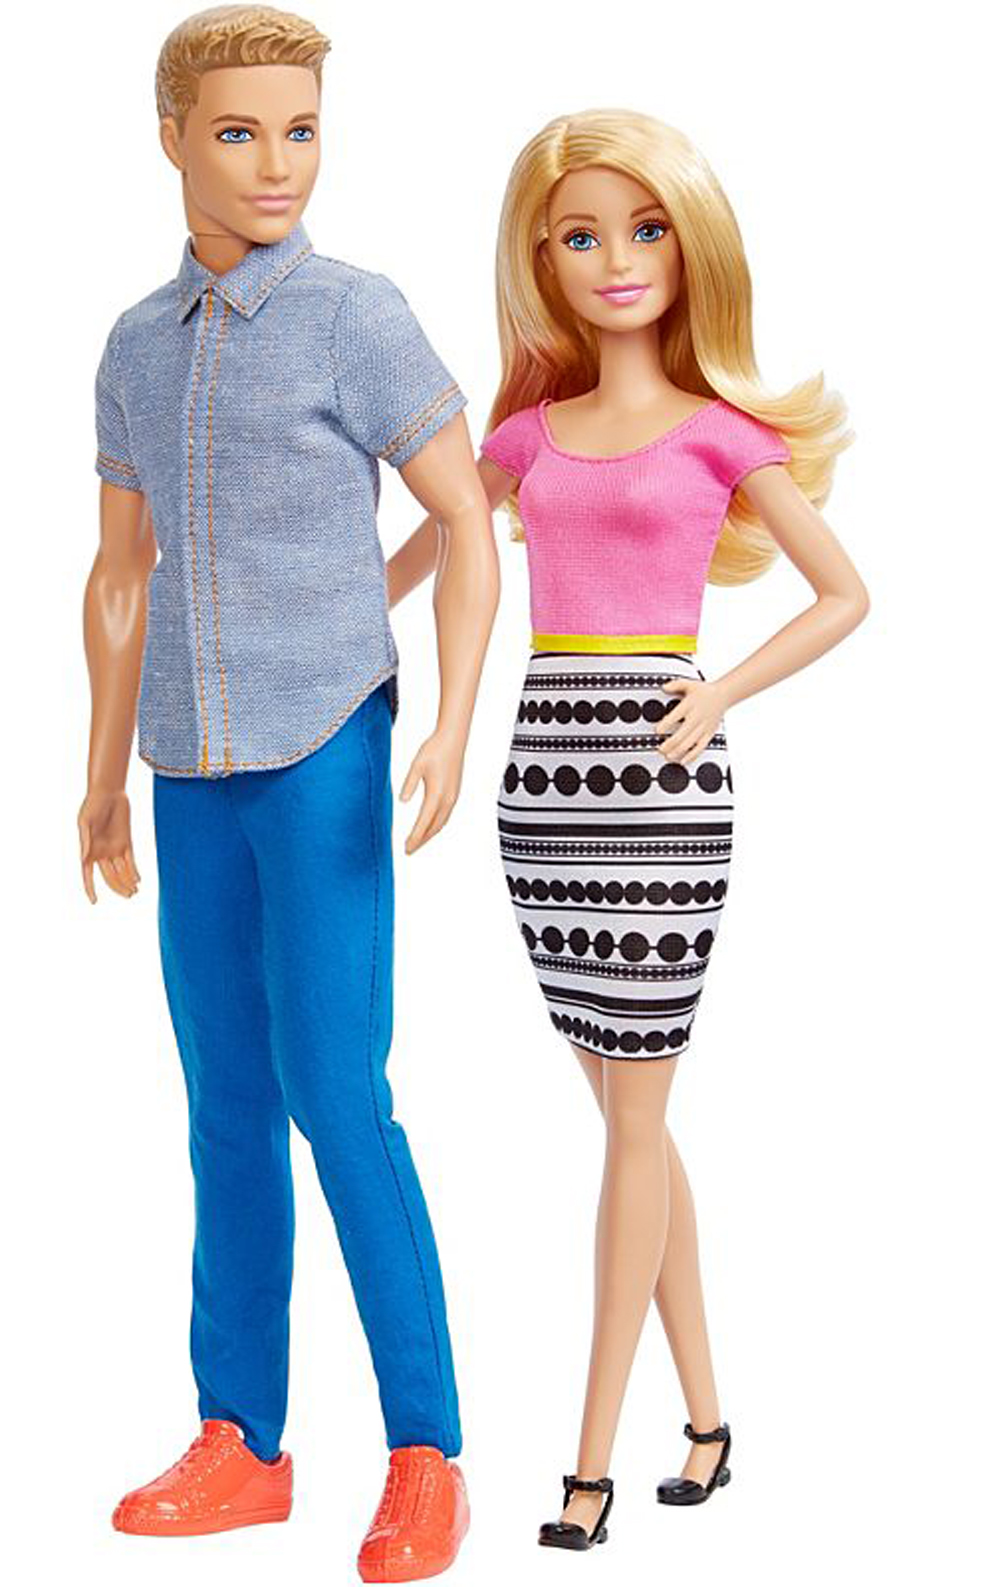 Leesett az állunk! Kiderült Barbie és Ken baba teljes neve! - Blikk